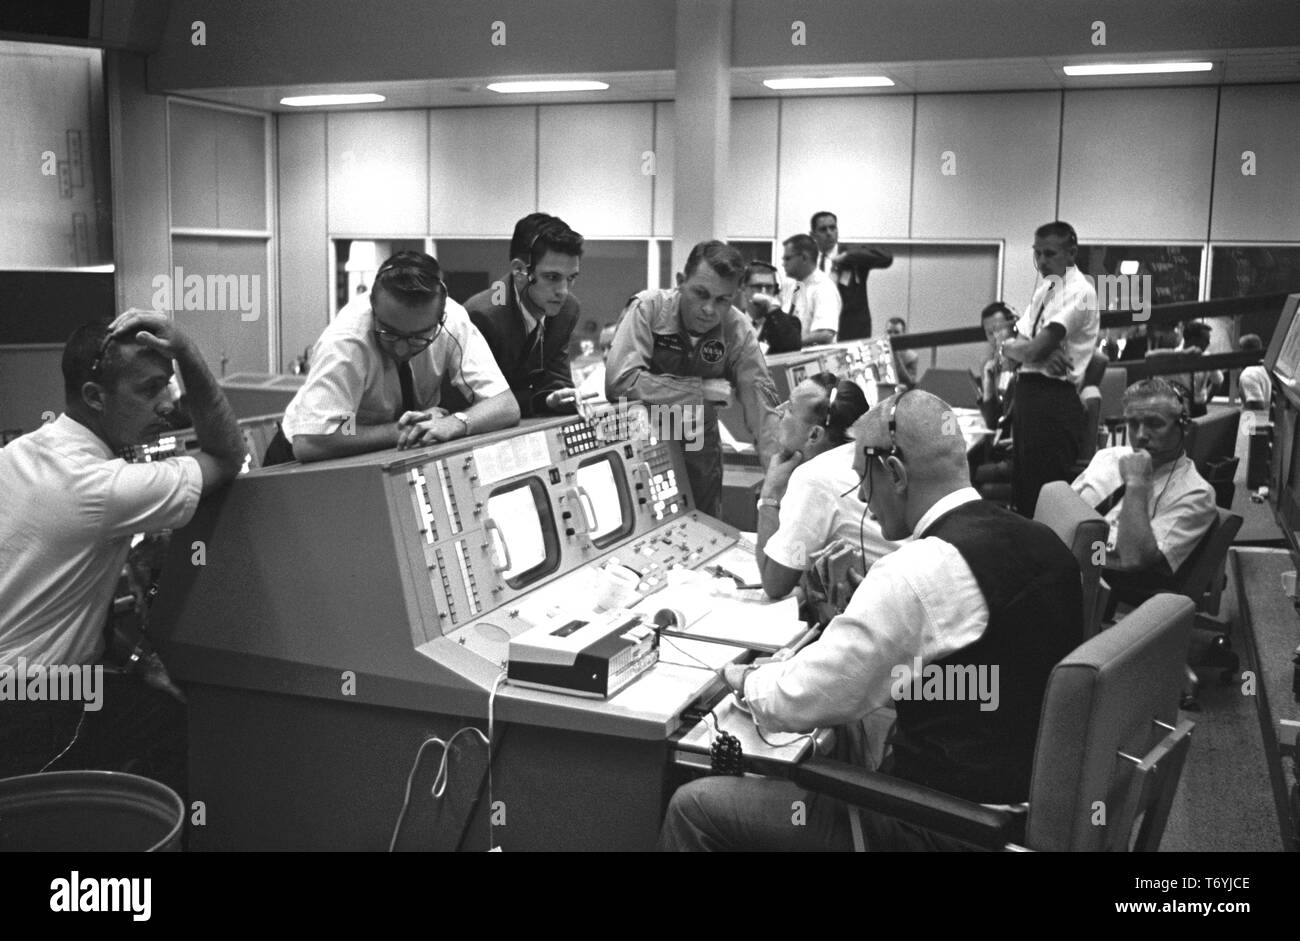 Photographie de l'administration dans les consoles Mission Control Center (MCC) au cours de la vol Gemini 5, Houston, Texas, Eugene F. Kranz, le Dr Christopher C. Kraft Jr, le 21 août 1965. Le Dr Charles Berry, et Elliot M. Voir. Droit avec la permission de la National Aeronautics and Space Administration (NASA). () Banque D'Images